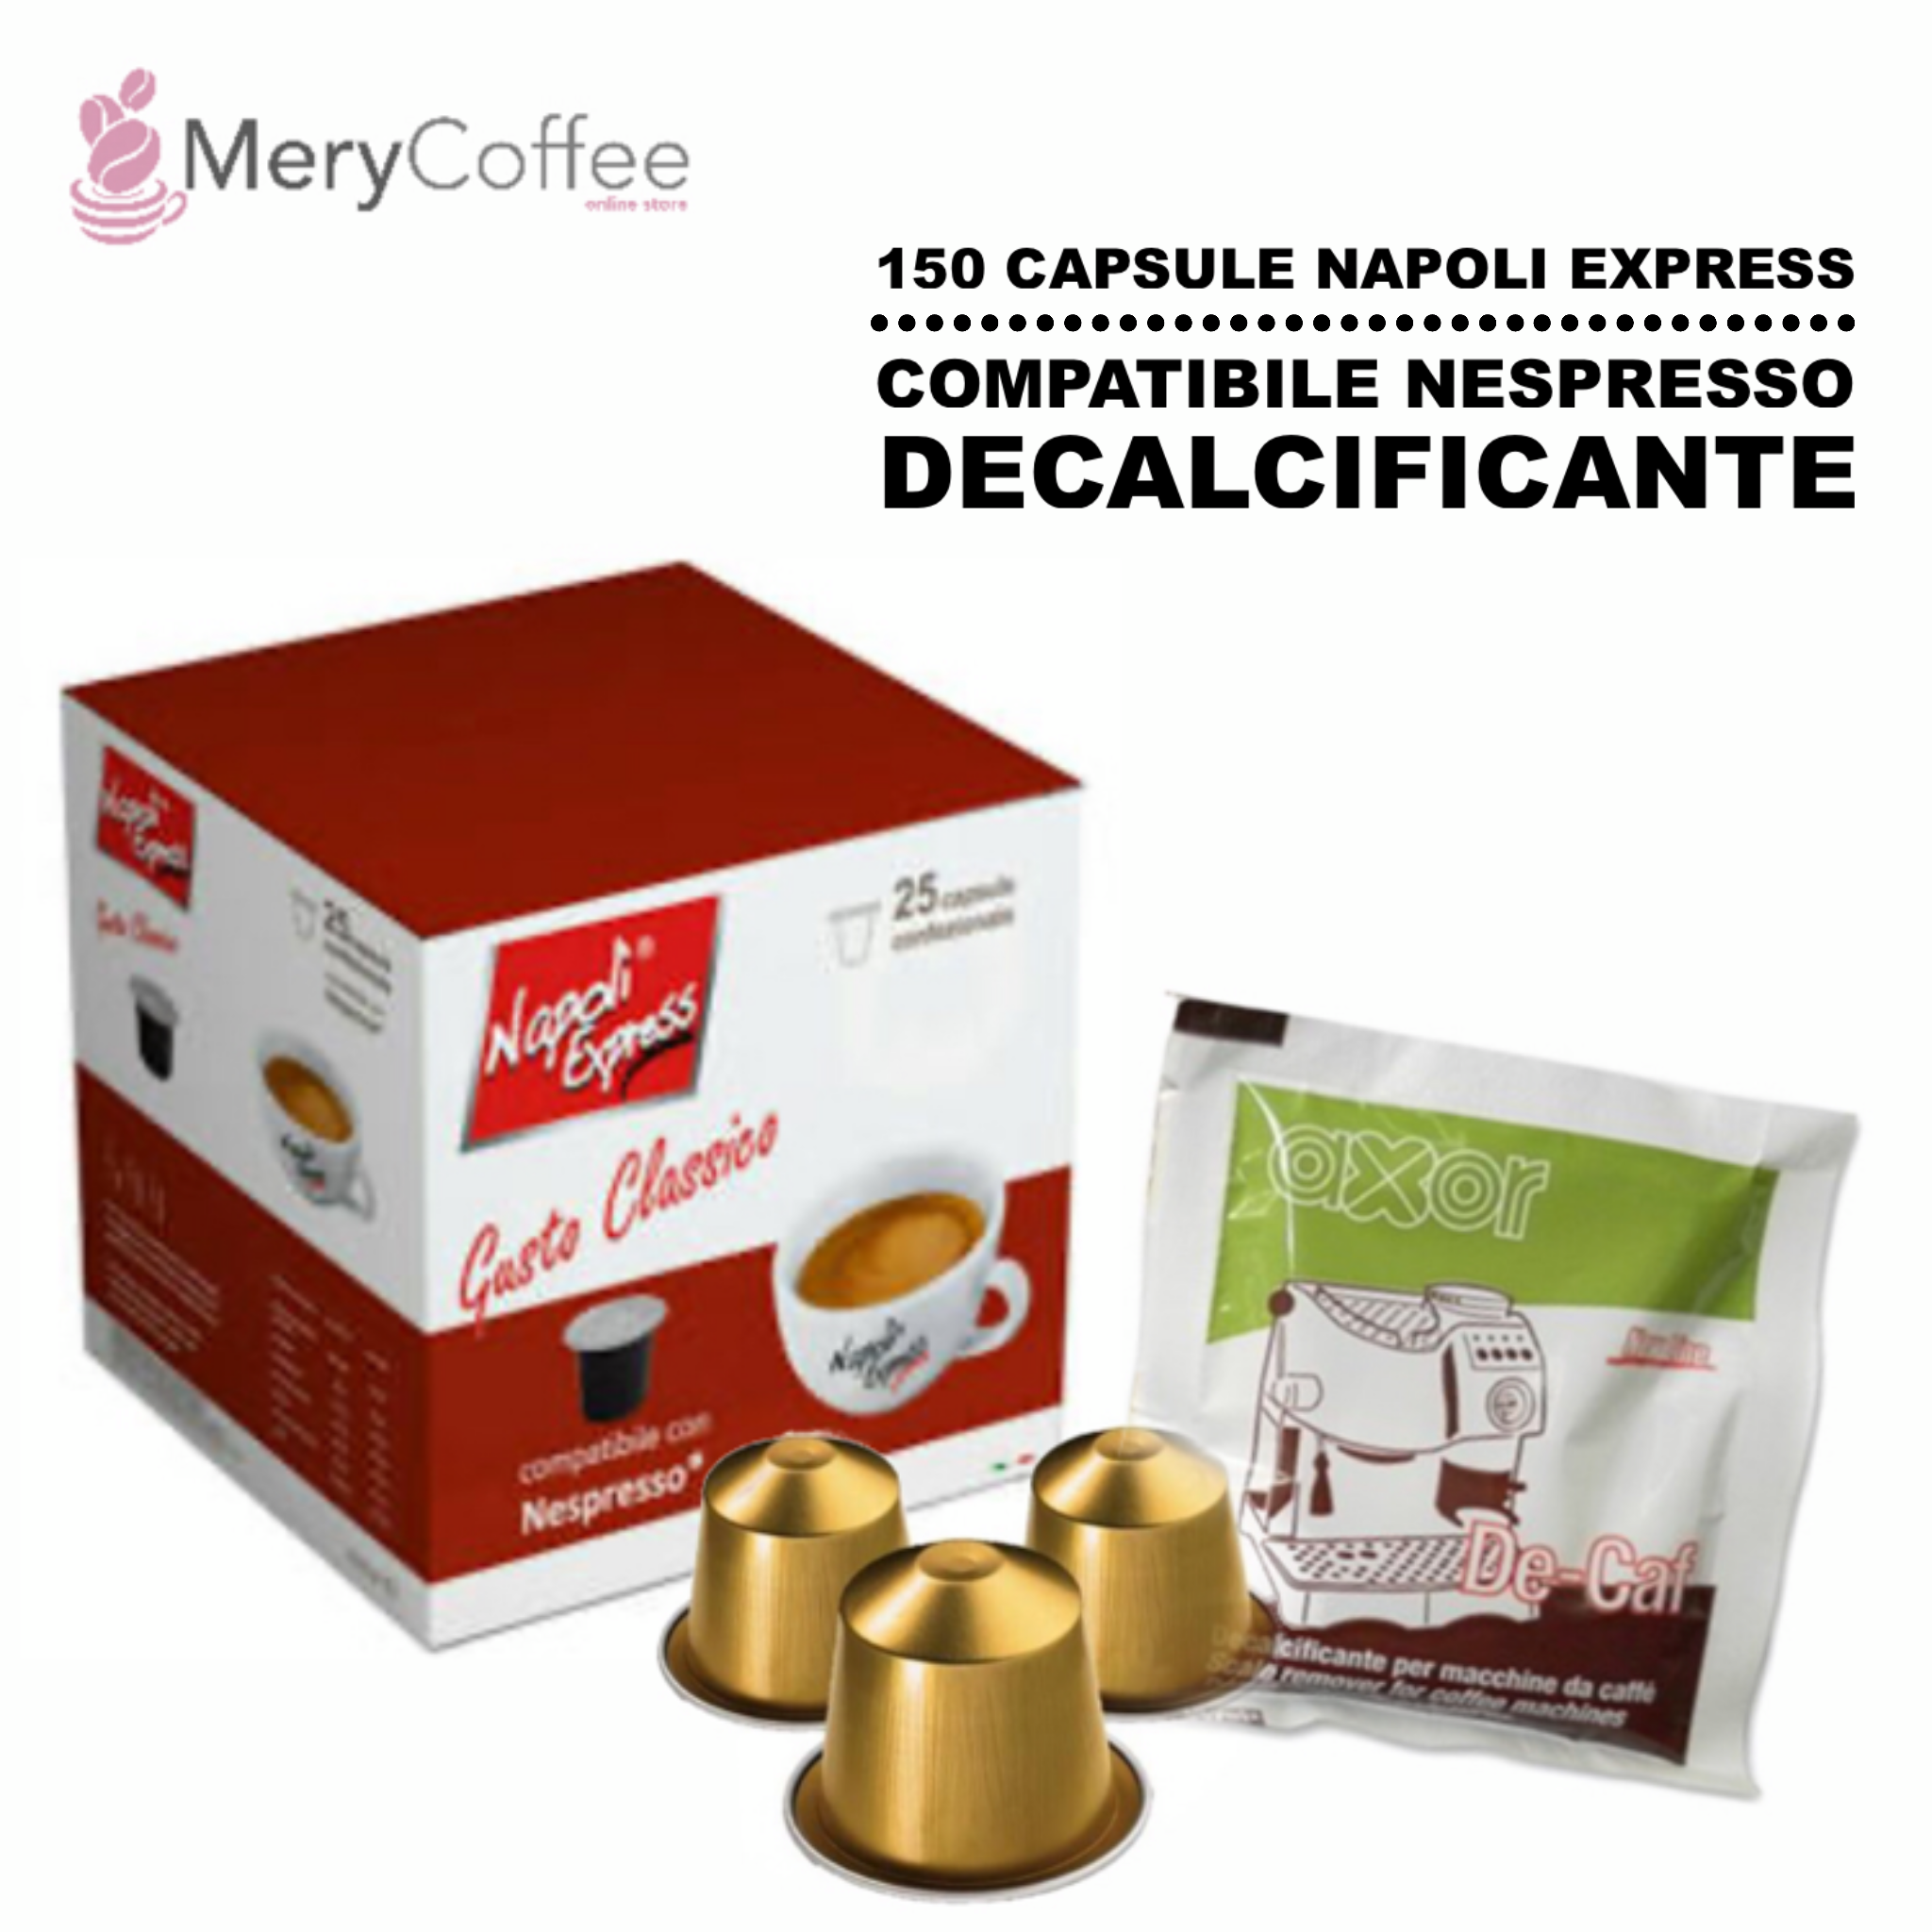 150 capsule napoli express compatibile nespresso + decalcificante -  MeryCoffee